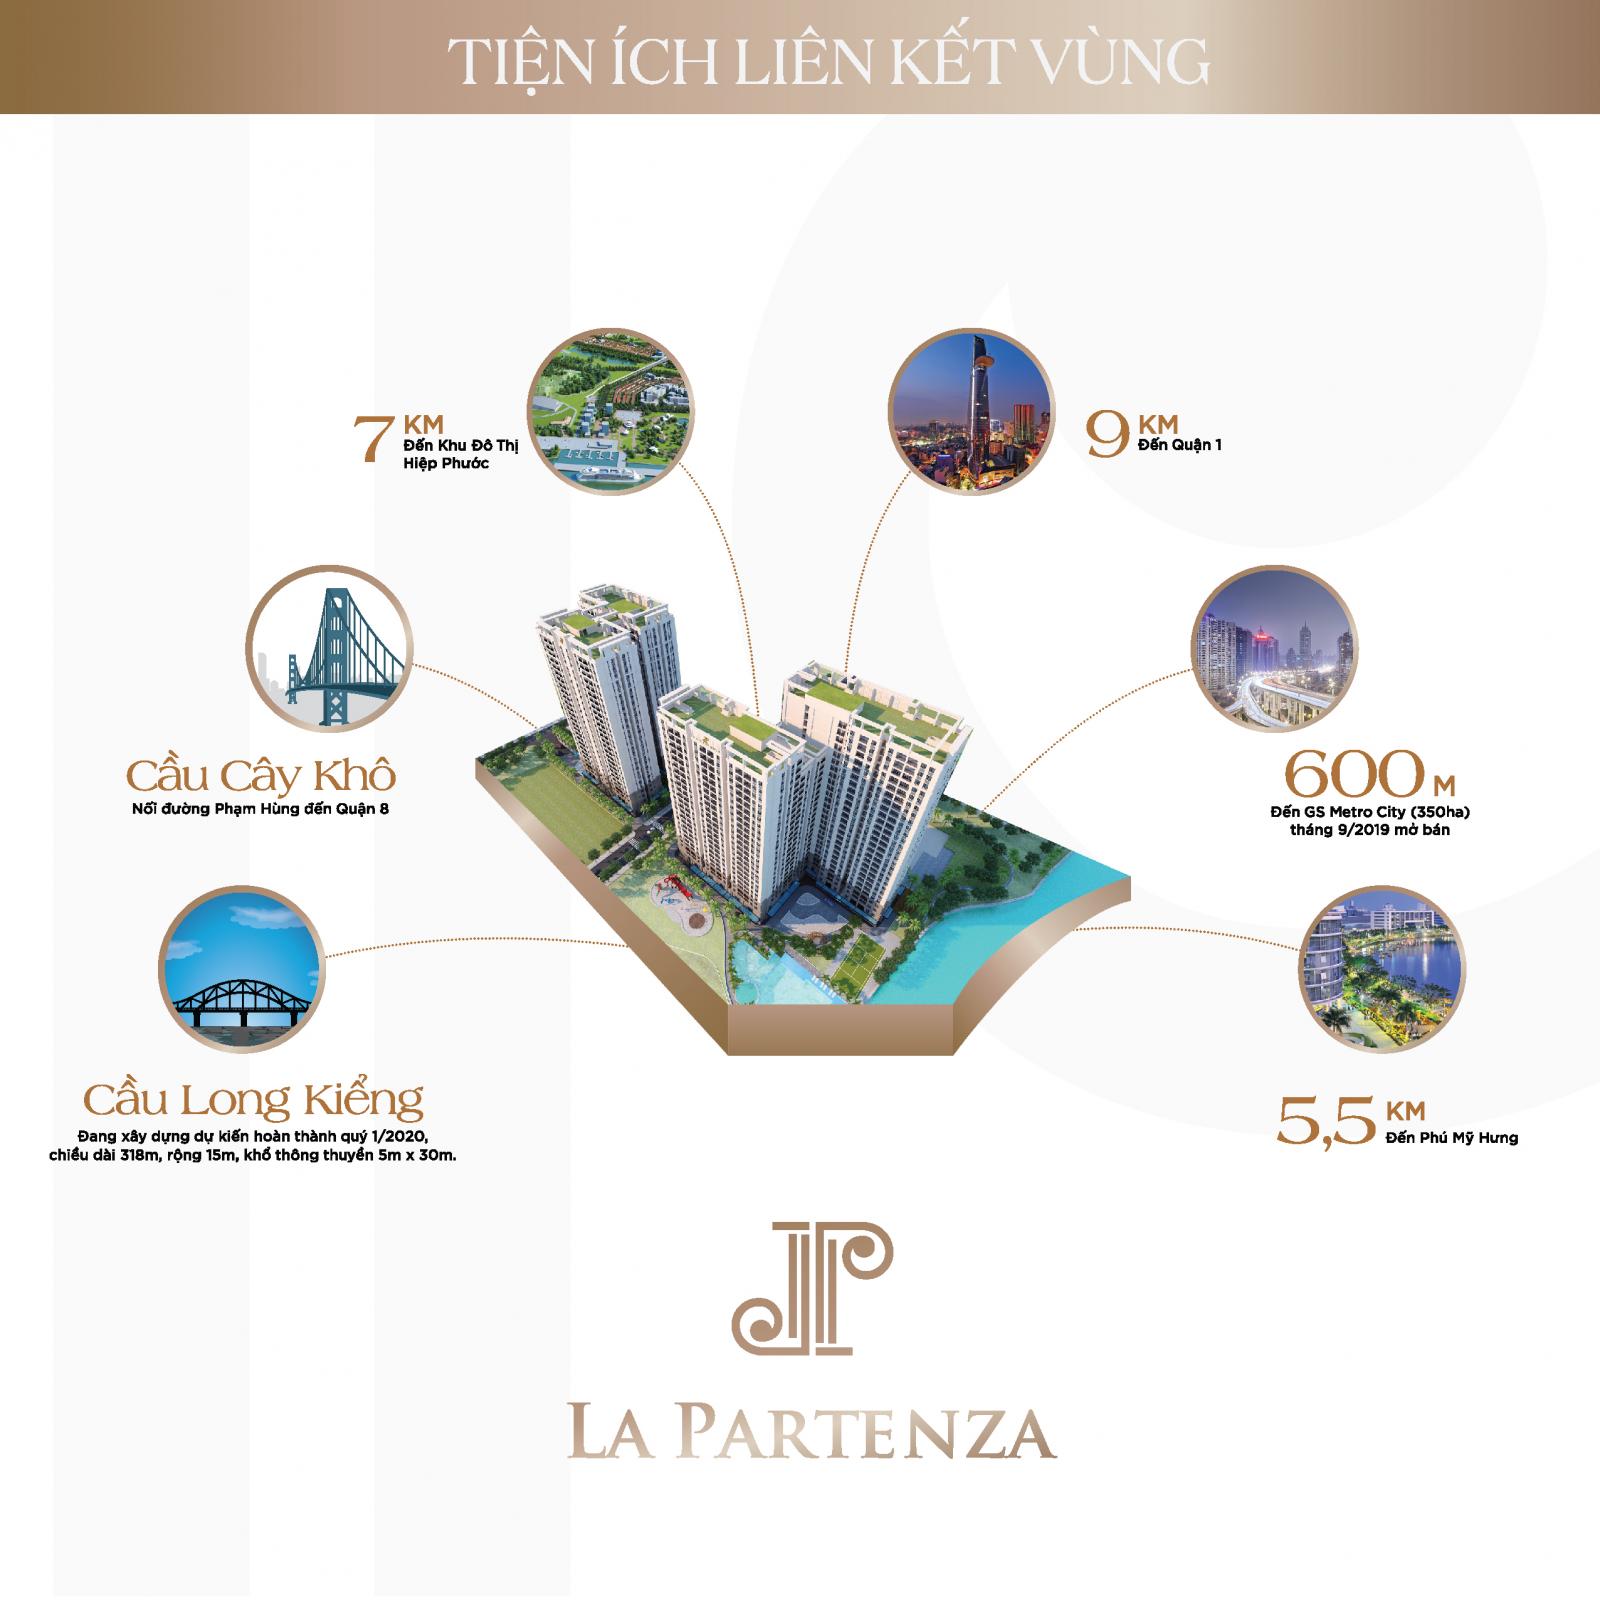 Hình ảnh về La Partenza